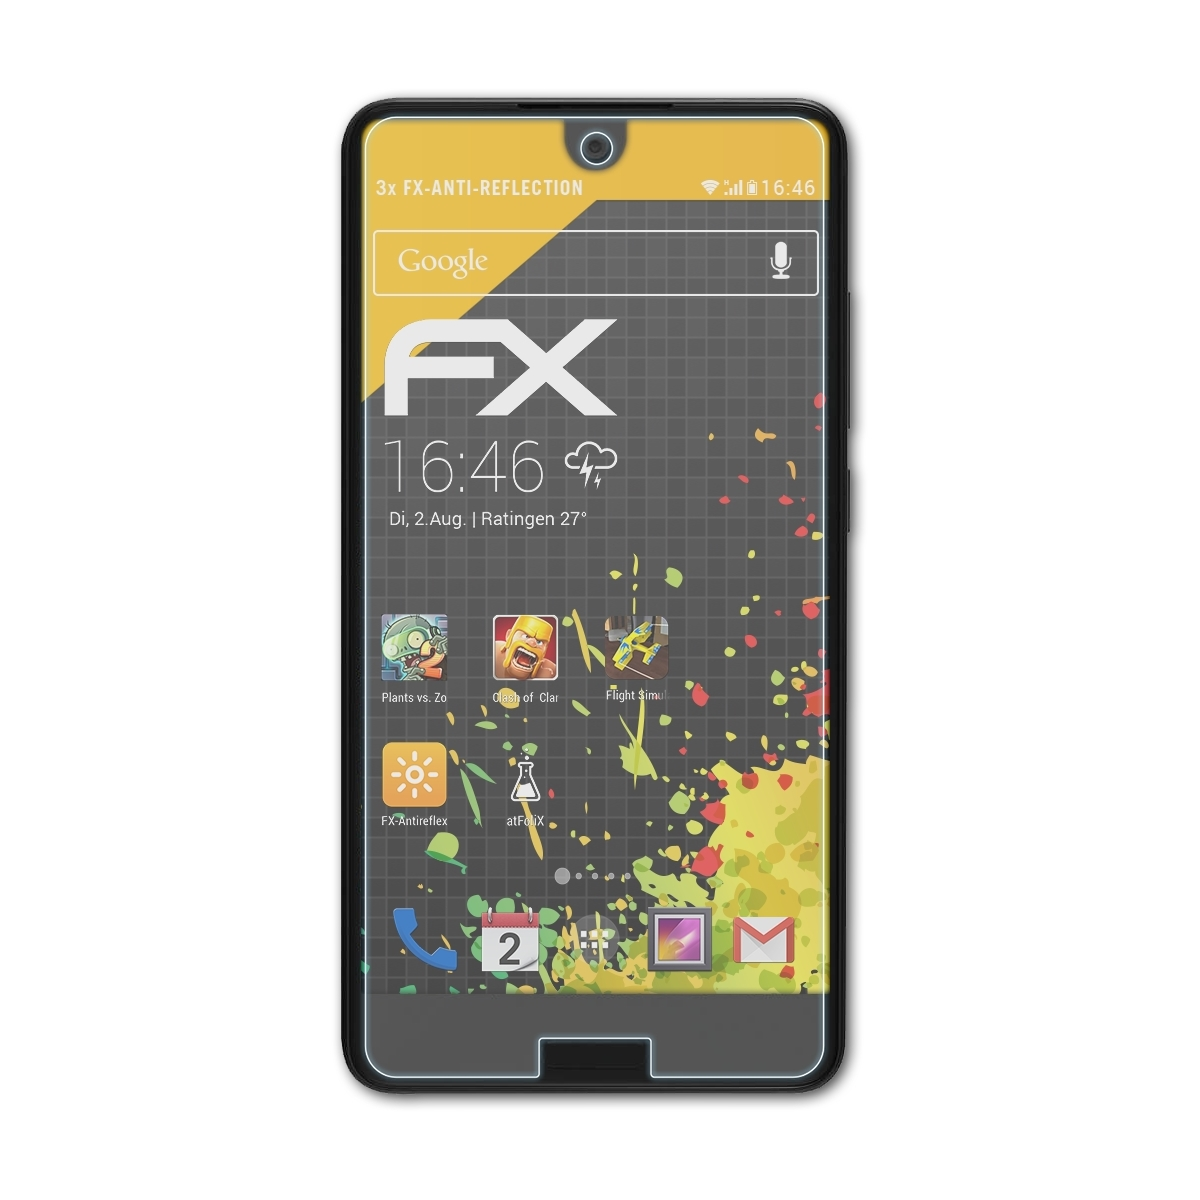 ATFOLIX 3x FX-Antireflex C10) Aquos Sharp Displayschutz(für